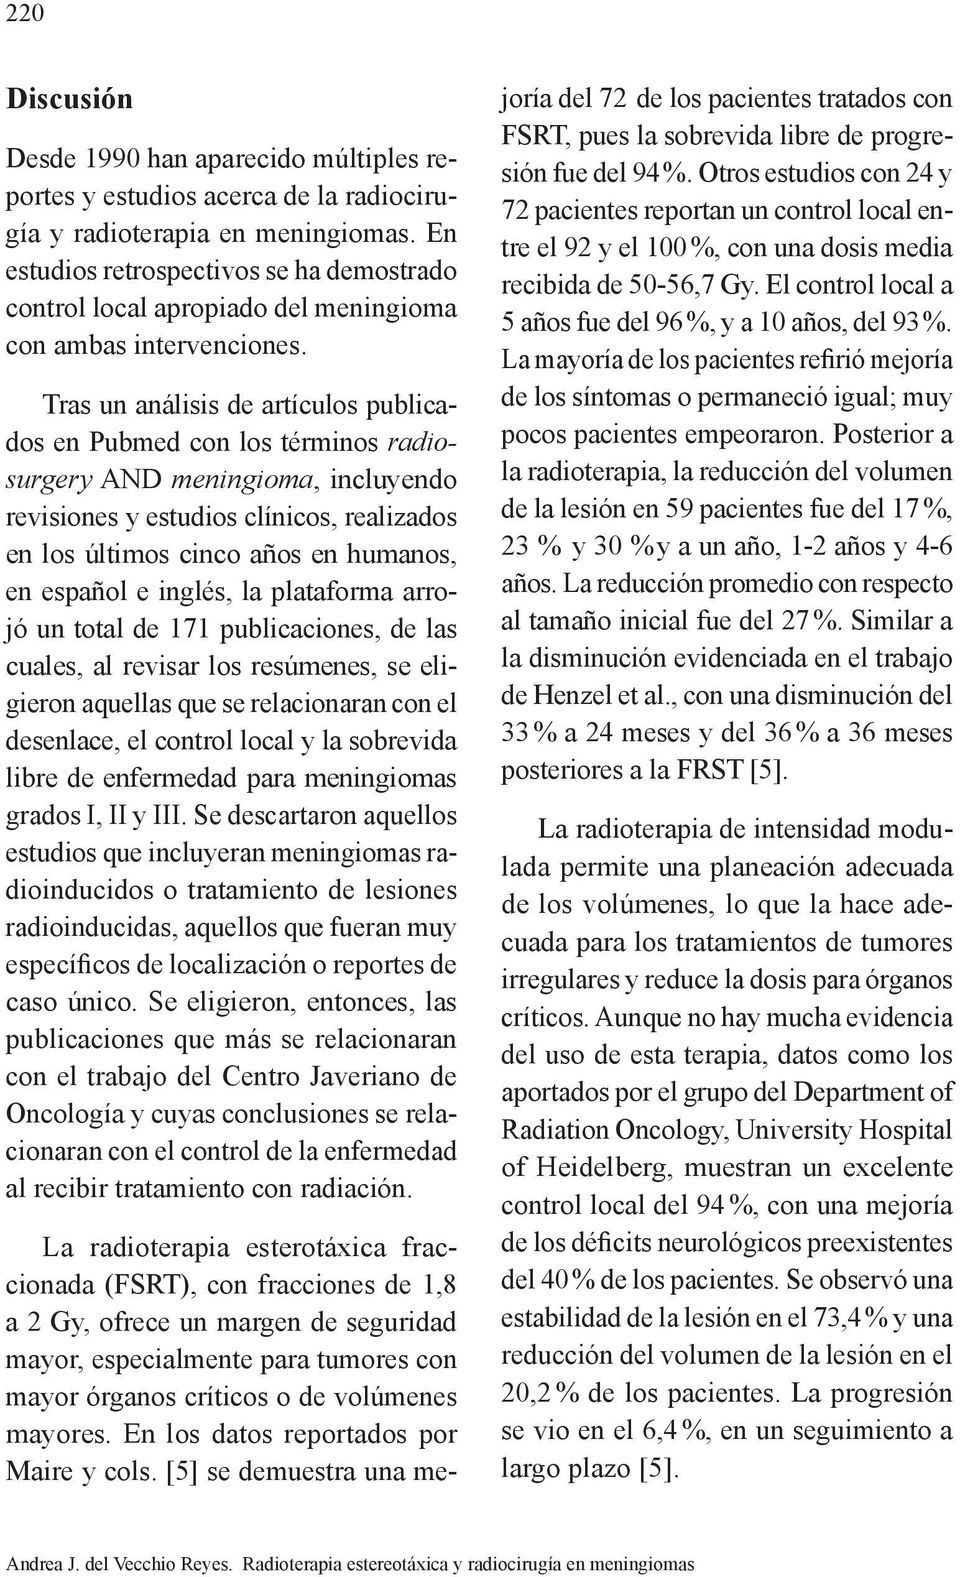 Tras un análisis de artículos publicados en Pubmed con los términos radiosurgery AND meningioma, incluyendo revisiones y estudios clínicos, realizados en los últimos cinco años en humanos, en español